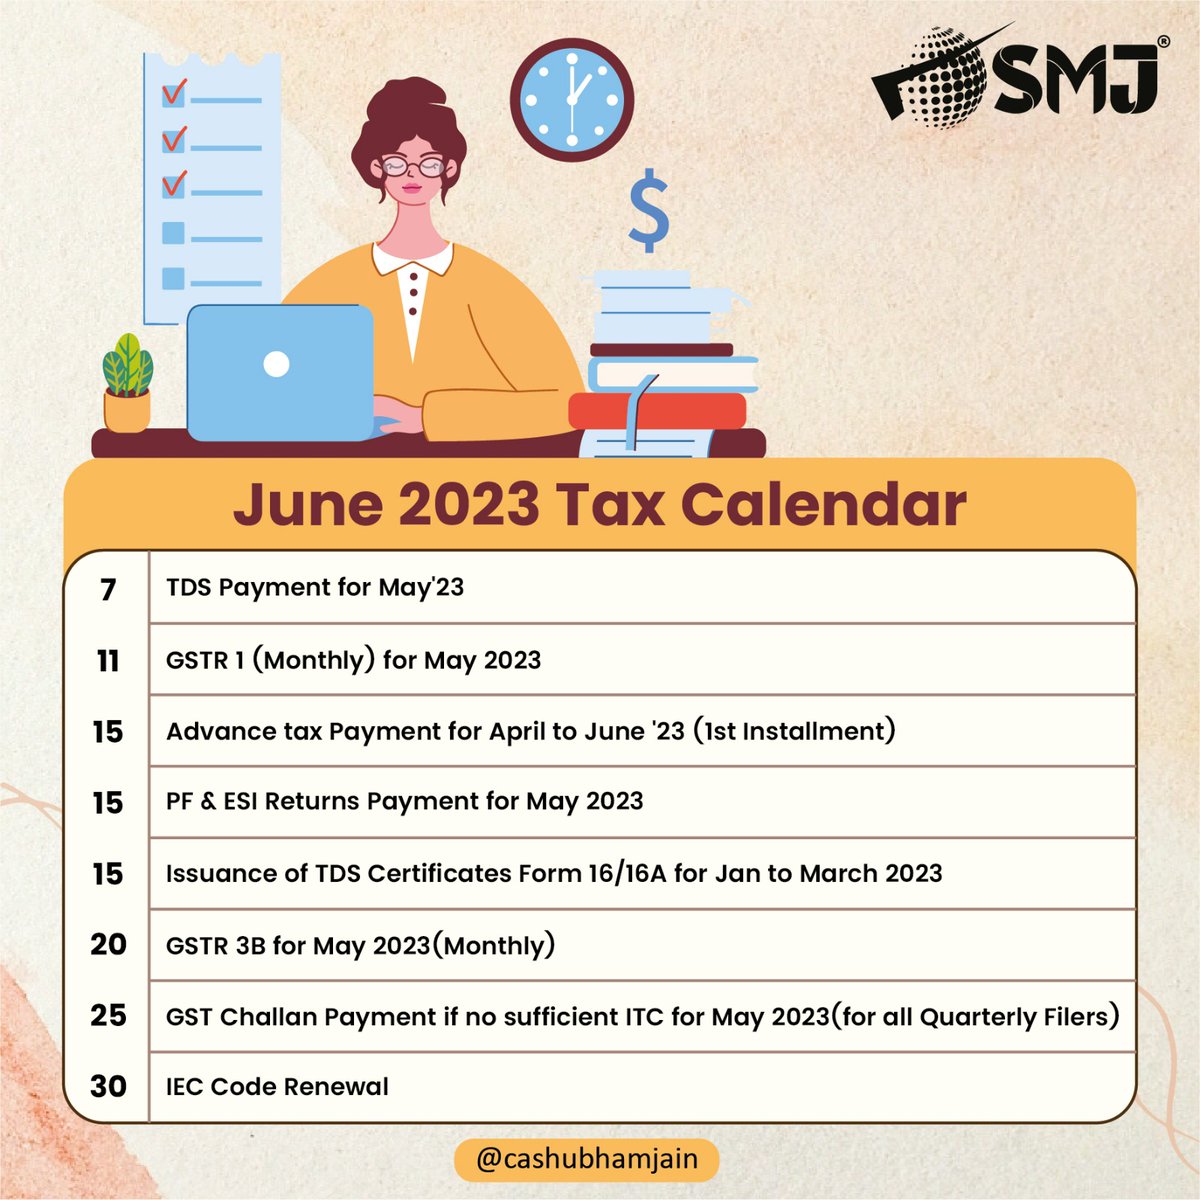 #june2023 Tax Calender

#tax #calendar #TaxCalendar #TaxDeadlines #taxfiling #taxseason #TaxReminders #taxpreparation #taxplanning #TaxExtensions #taxobligations #taxtips @IncomeTaxIndia @Infosys_GSTN